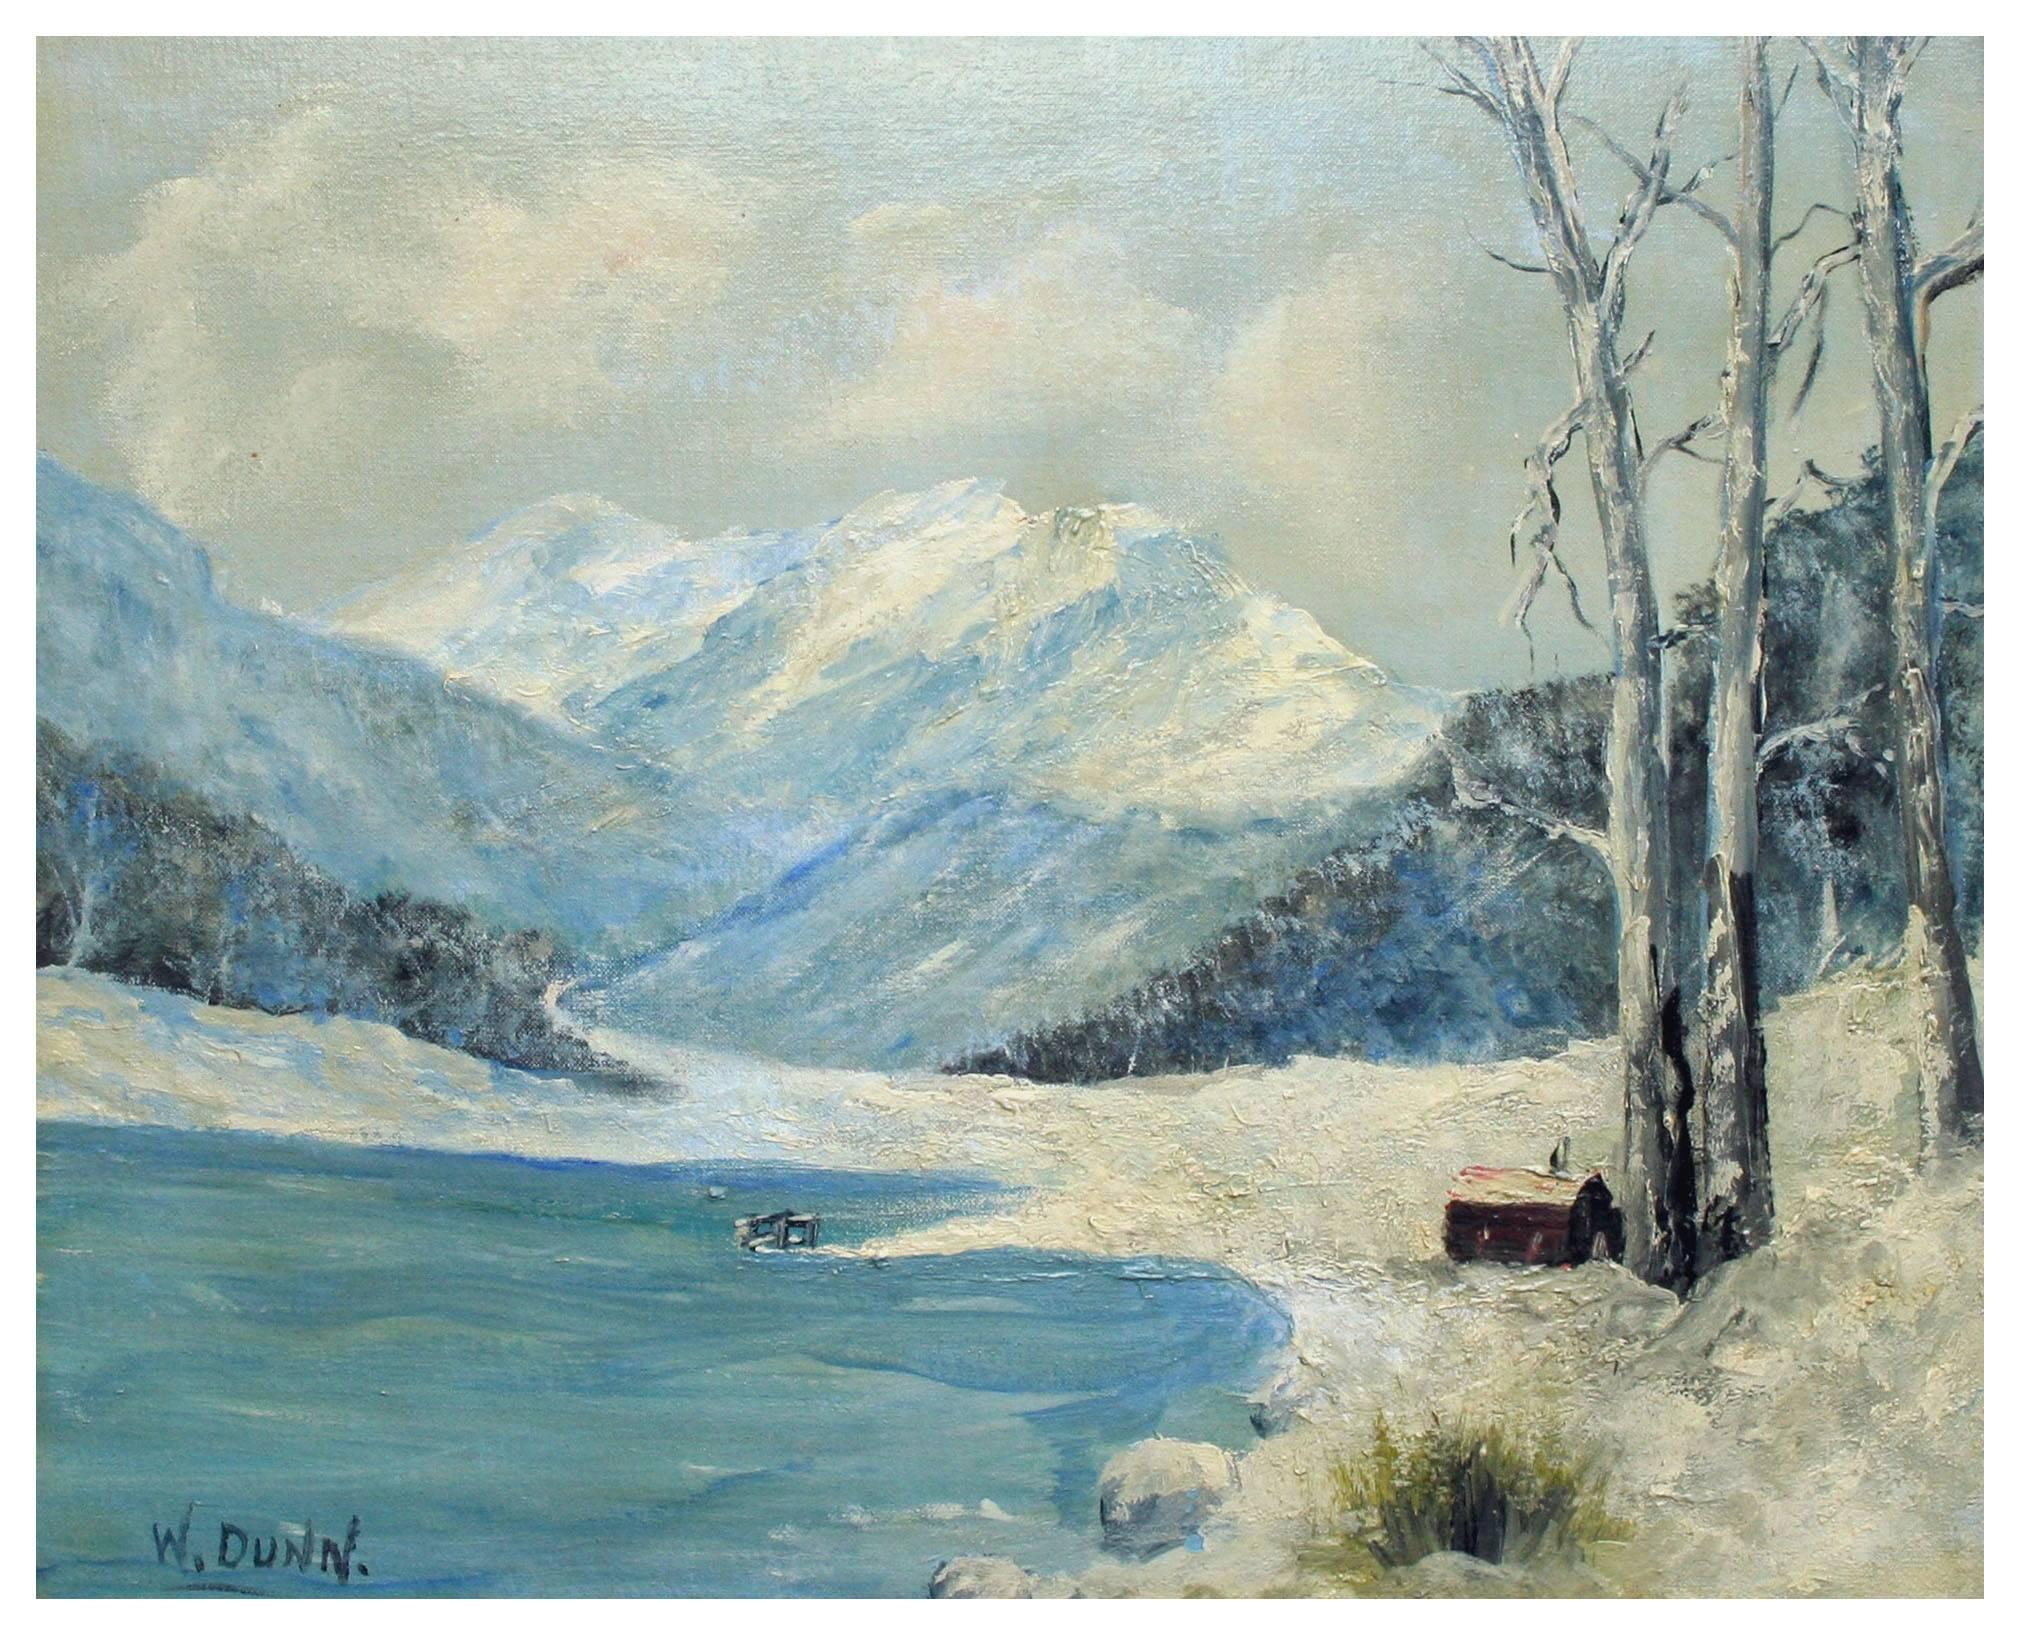 Lake Cabin in Schneelandschaft aus der Mitte des Jahrhunderts – Painting von W. Dunn